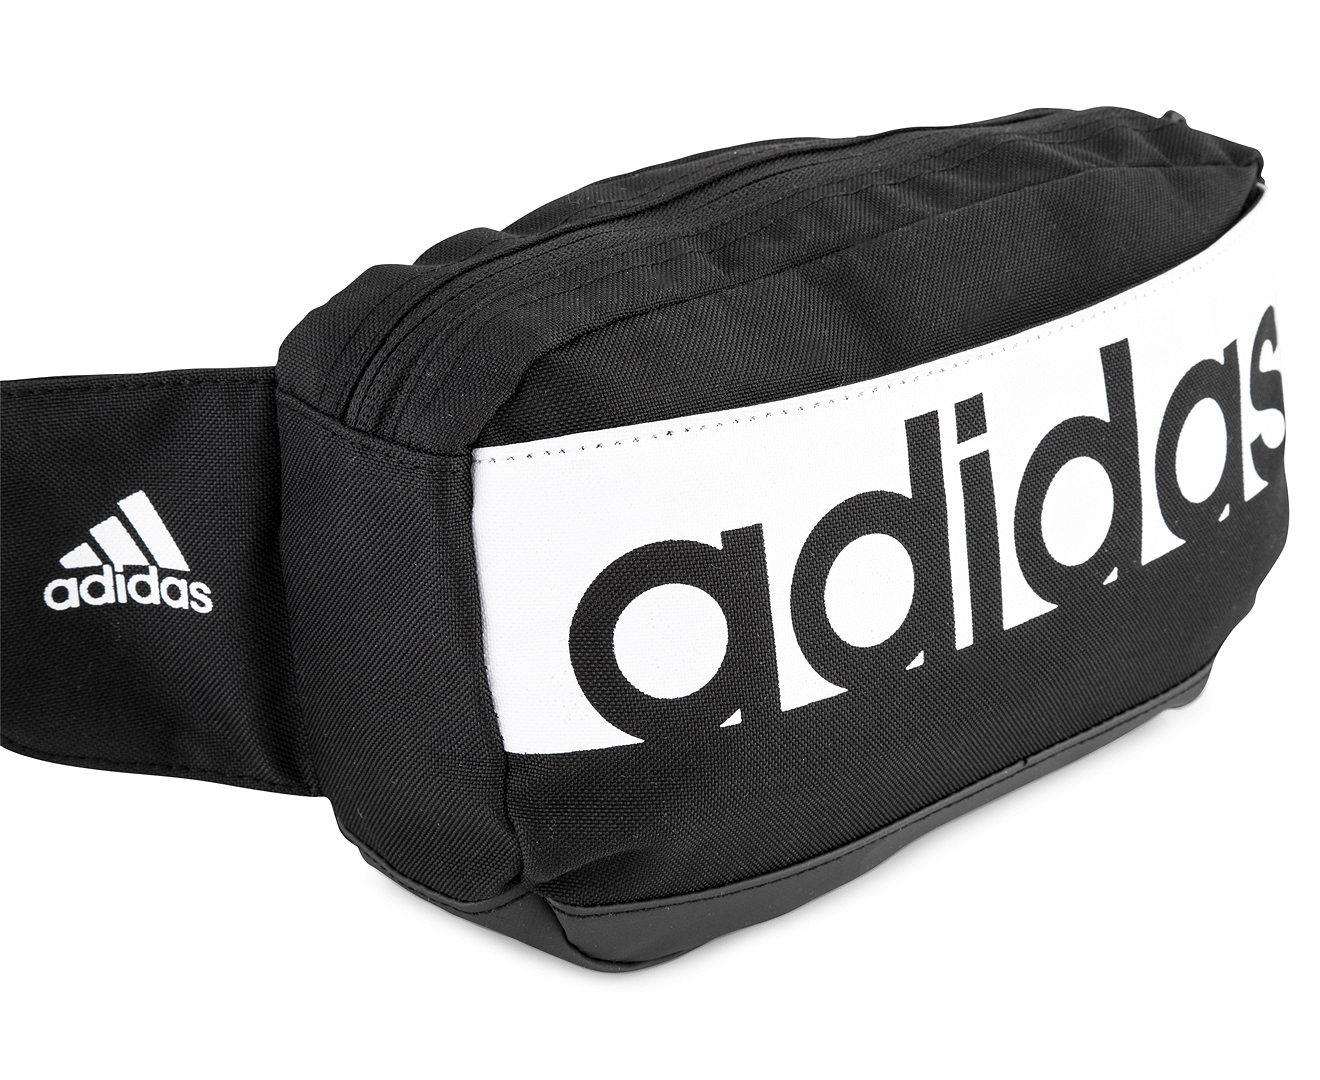 Adidas Linear Performance Waist Bag - Black | Catch.com.au